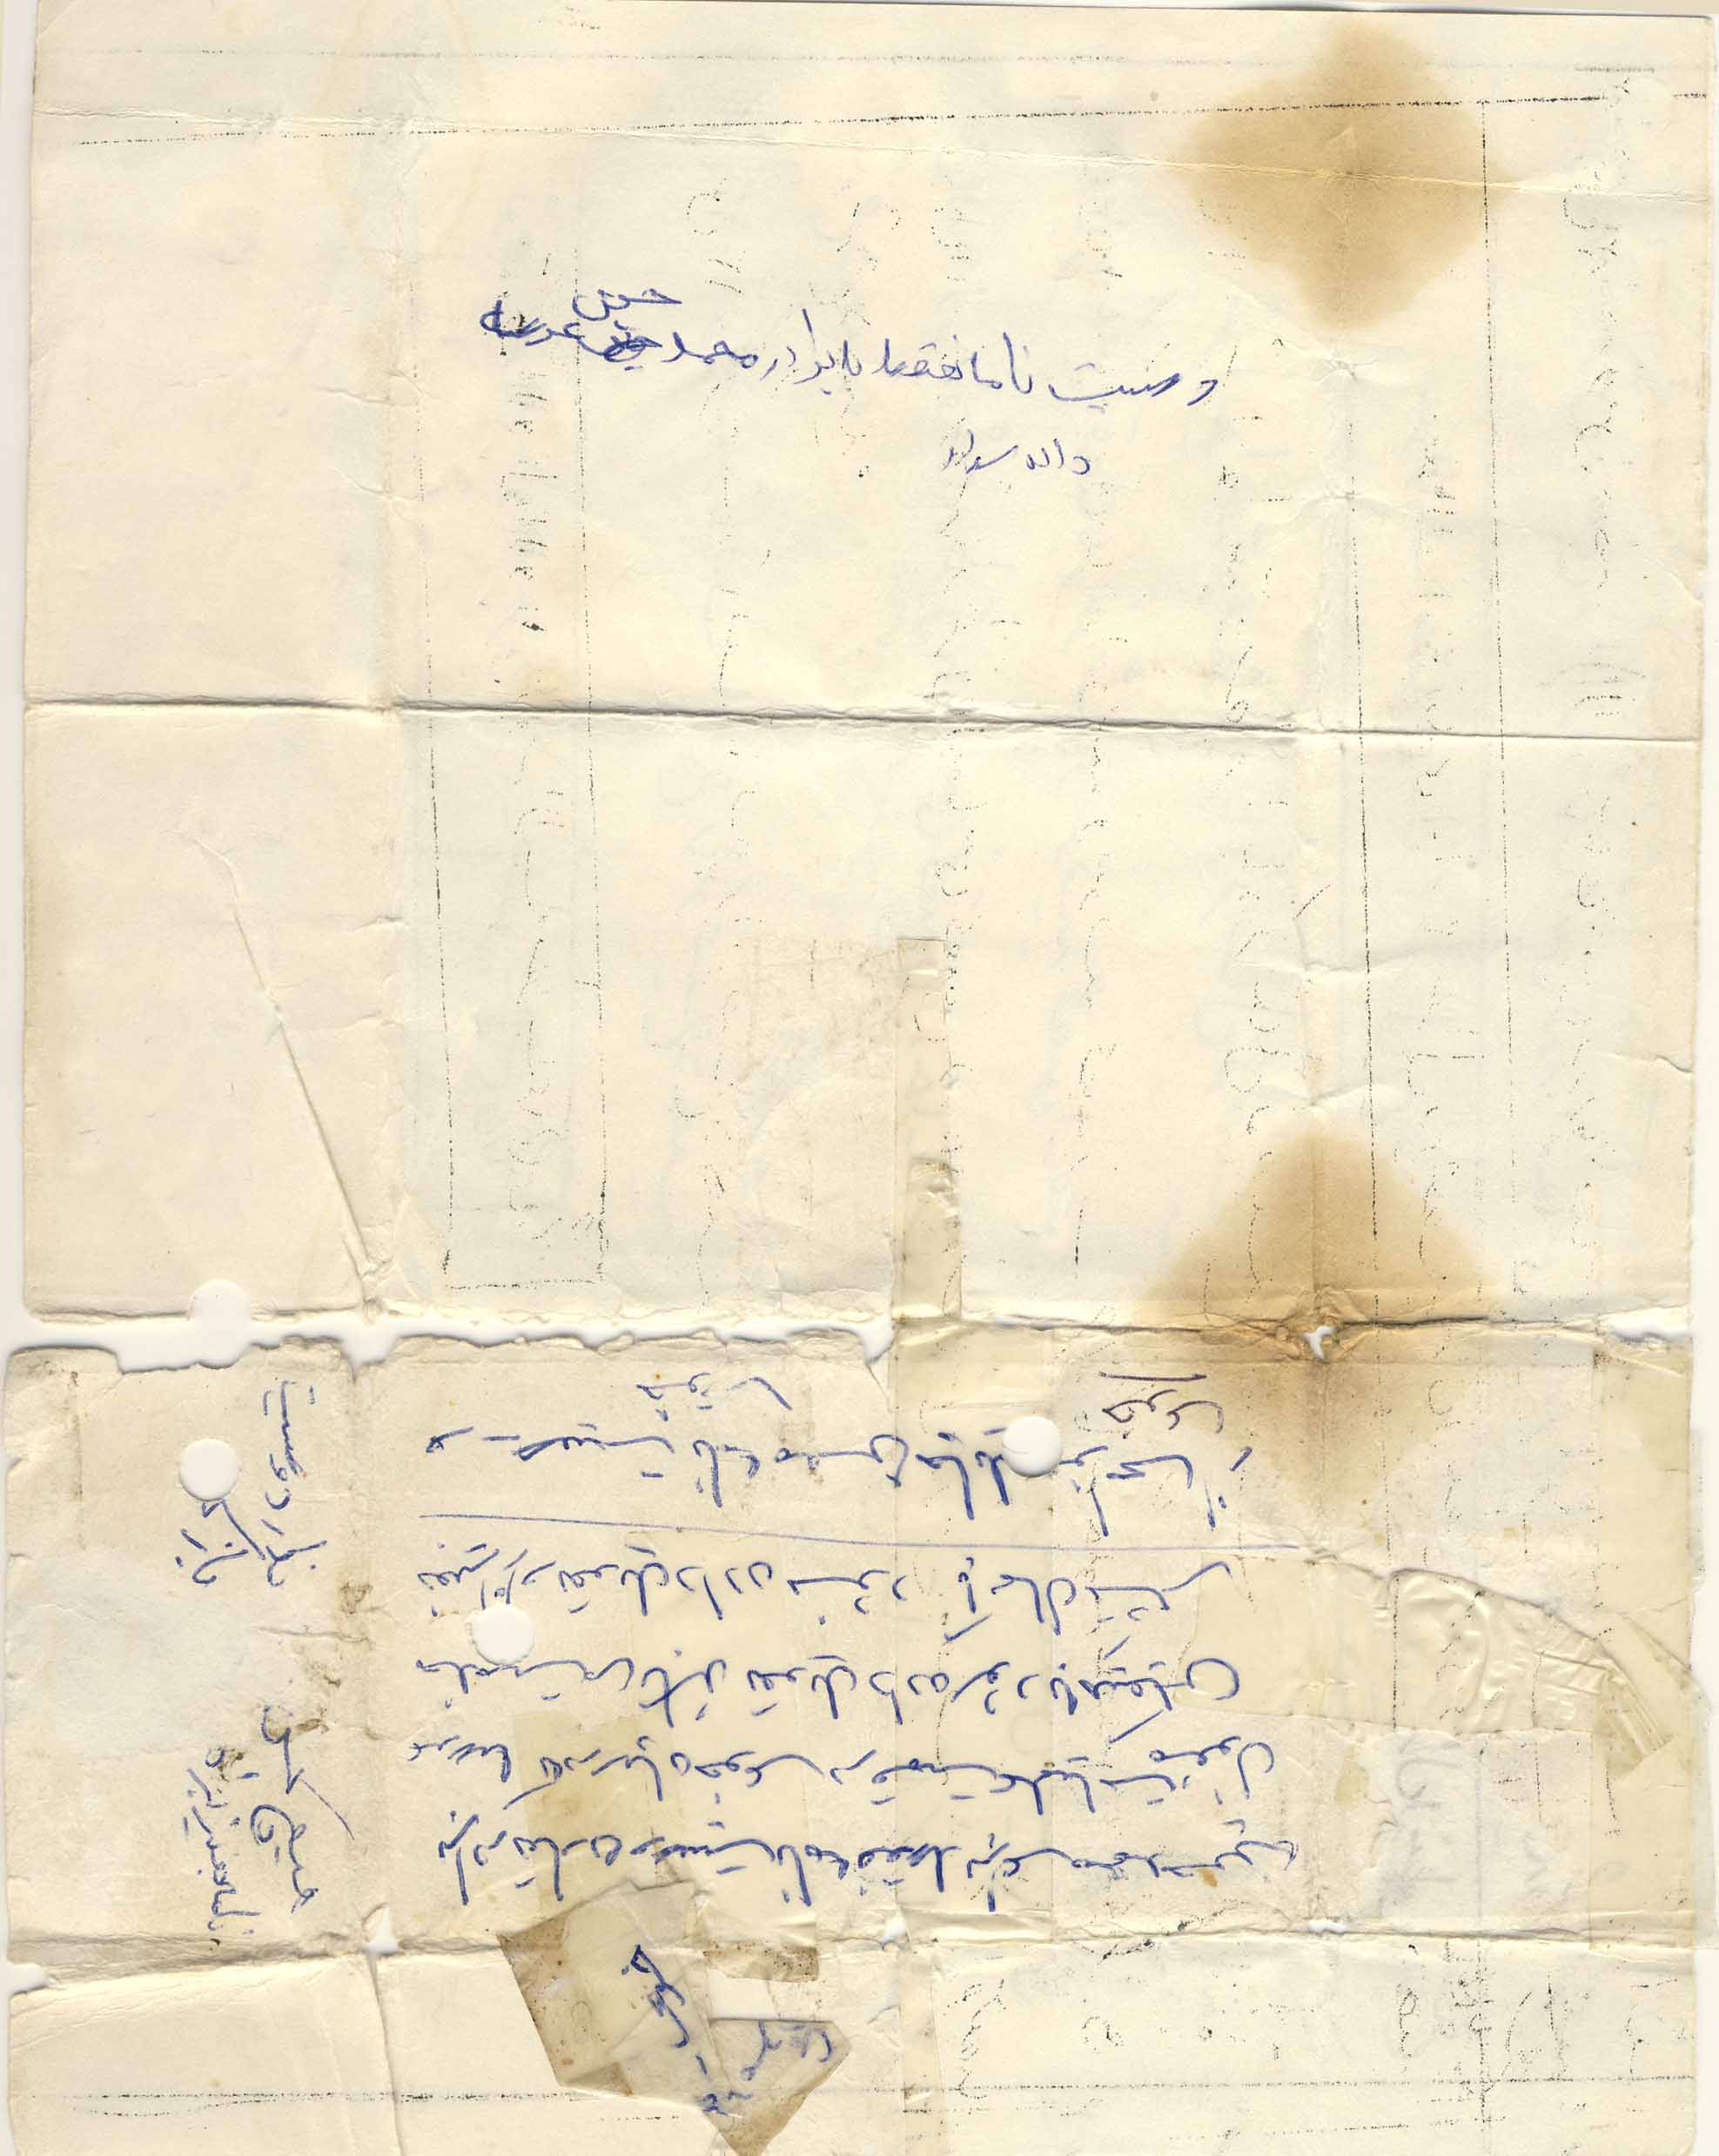 ‏متن وصیت نامه  « شهید محسن چايلو» به همراه دستخطش